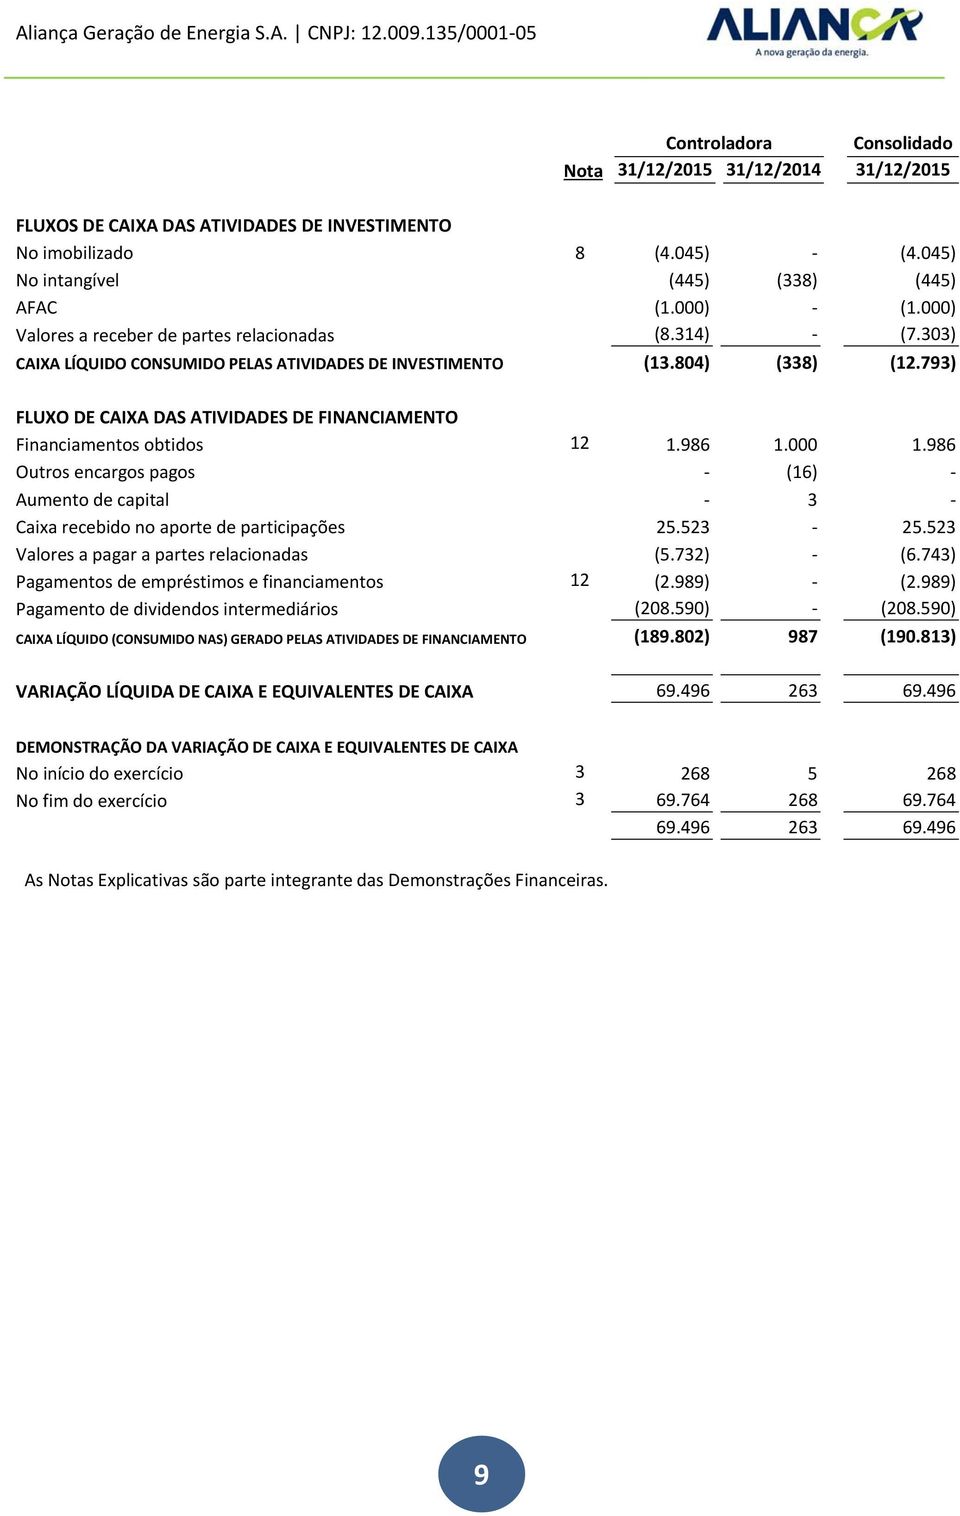 793) FLUXO DE CAIXA DAS ATIVIDADES DE FINANCIAMENTO Financiamentos obtidos 12 1.986 1.000 1.986 Outros encargos pagos (16) Aumento de capital 3 Caixa recebido no aporte de participações 25.523 25.